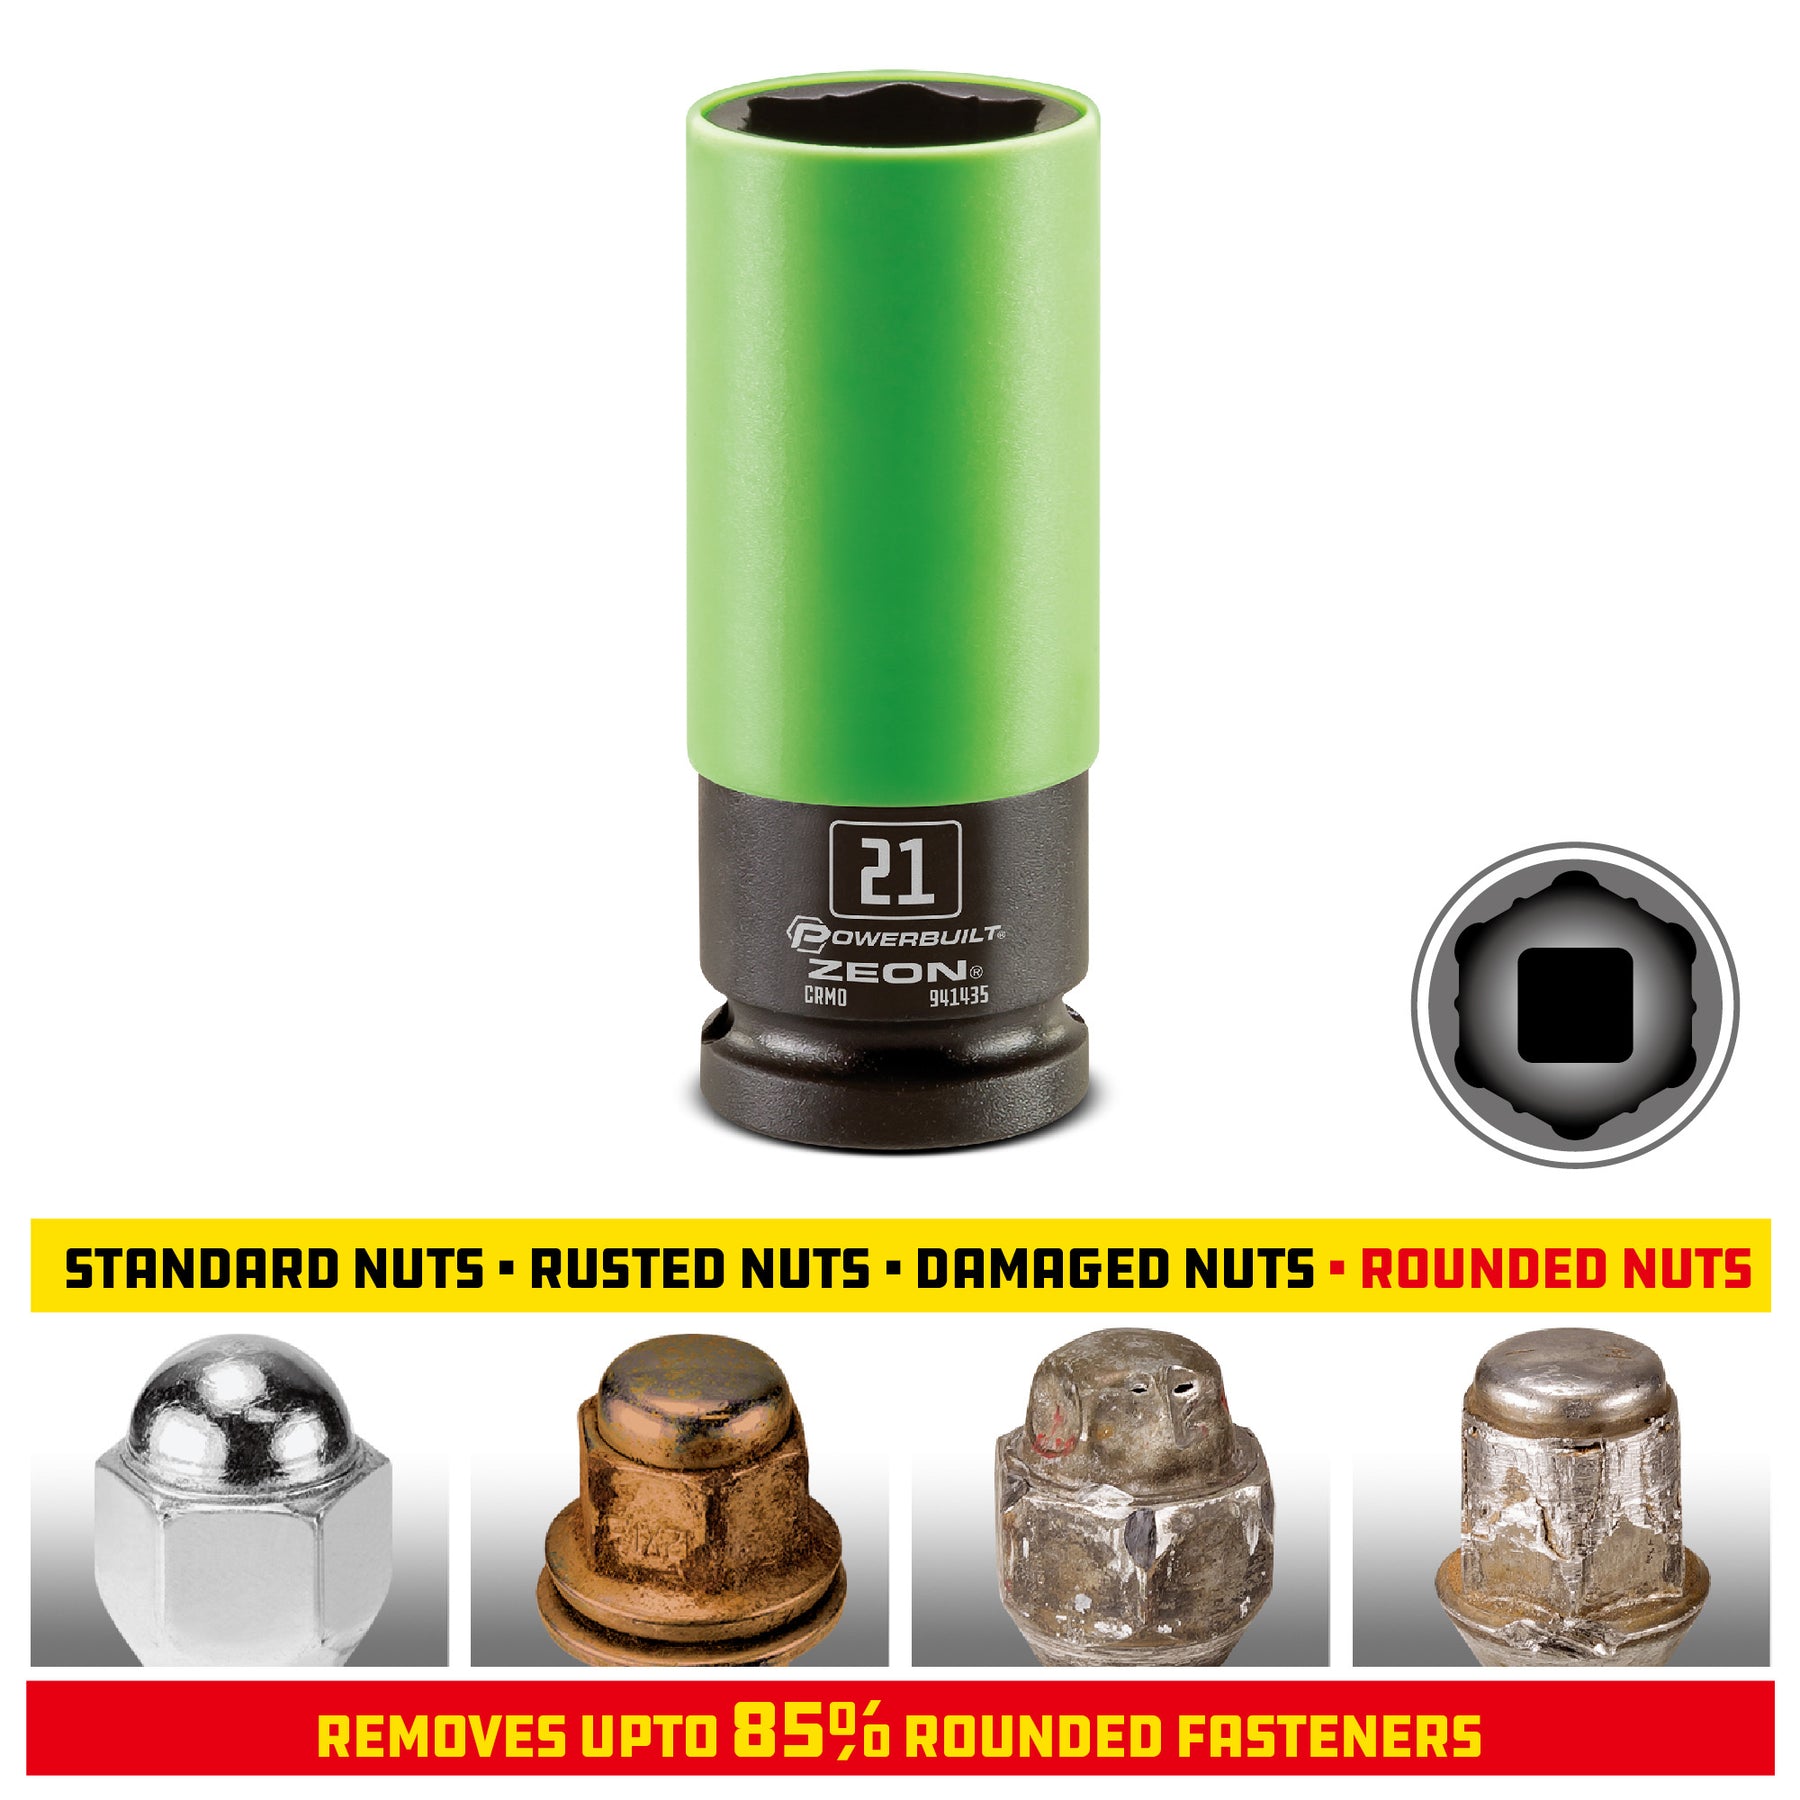 Powerbuilt 21mm Zeon Lug Nut Socket Set for Damaged Lug Nuts - 941435M